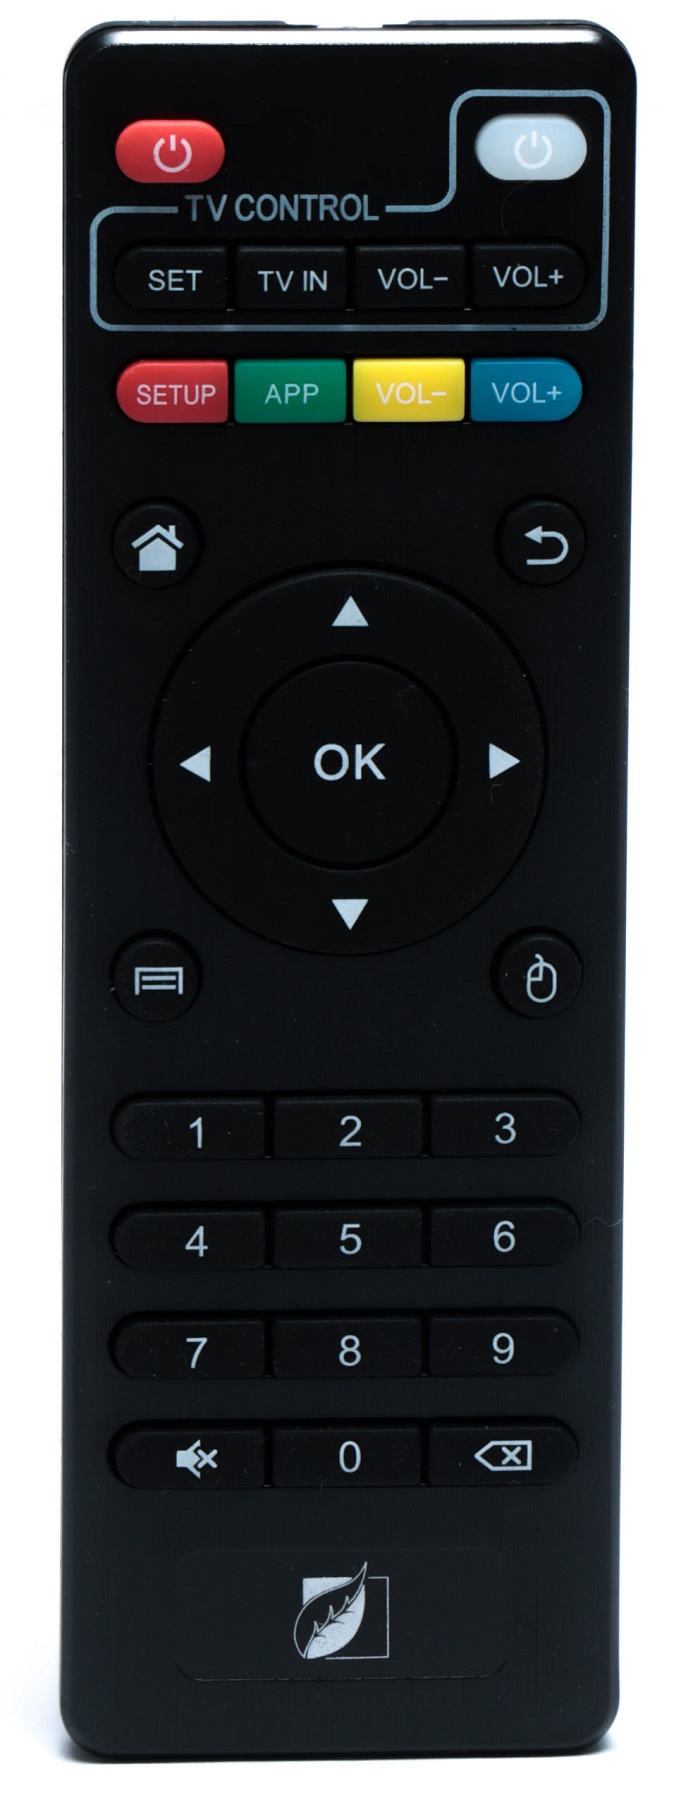 Smart TV Box dispositivo Tv inteligente y Navegación internet WiFi Green  Leaf Edición Especial